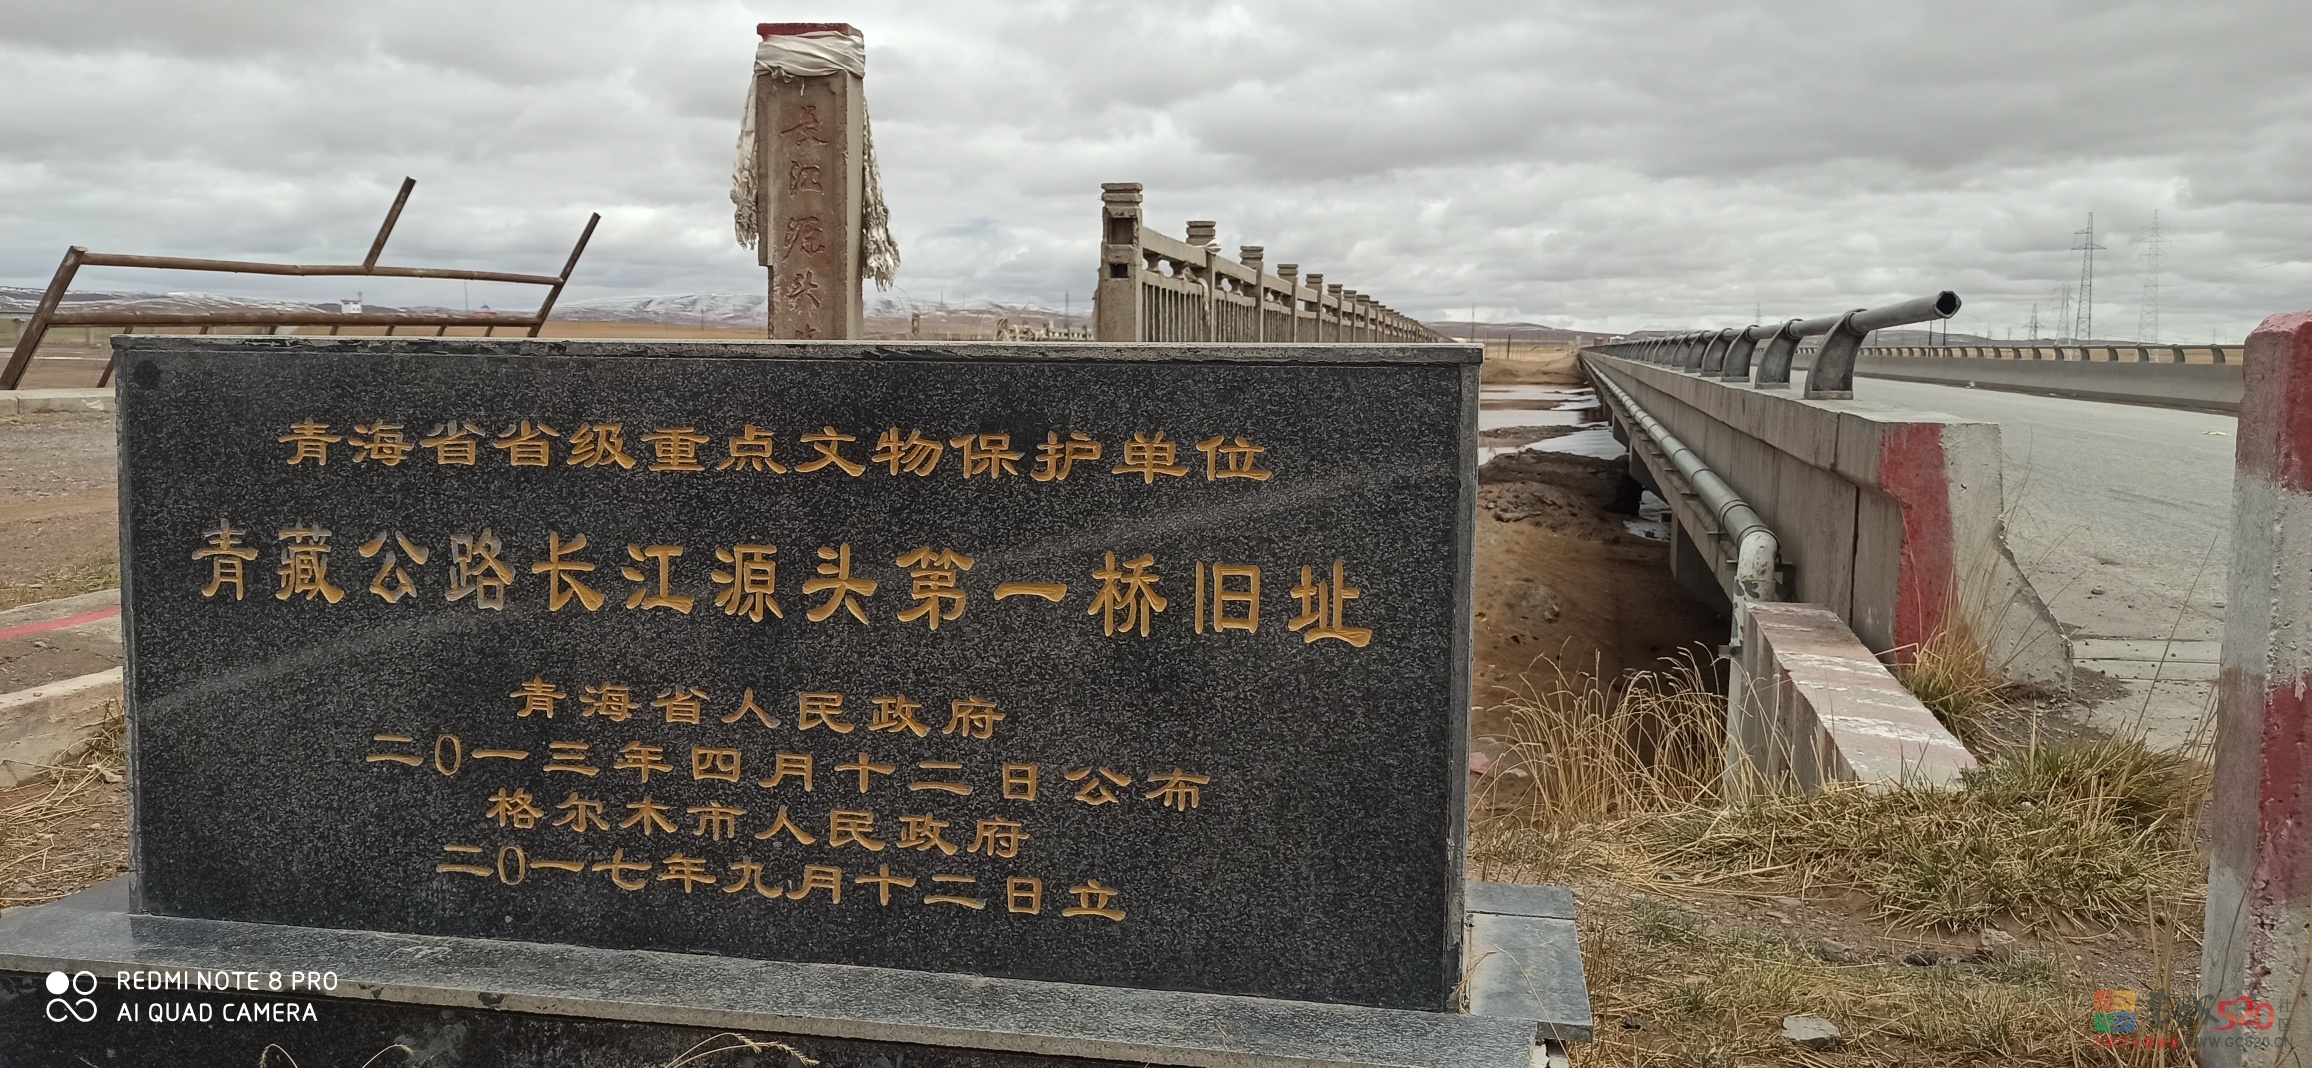 109国道青藏公路途中冒死也要看的景点绘萃873 / 作者:罗古 / 帖子ID:275353